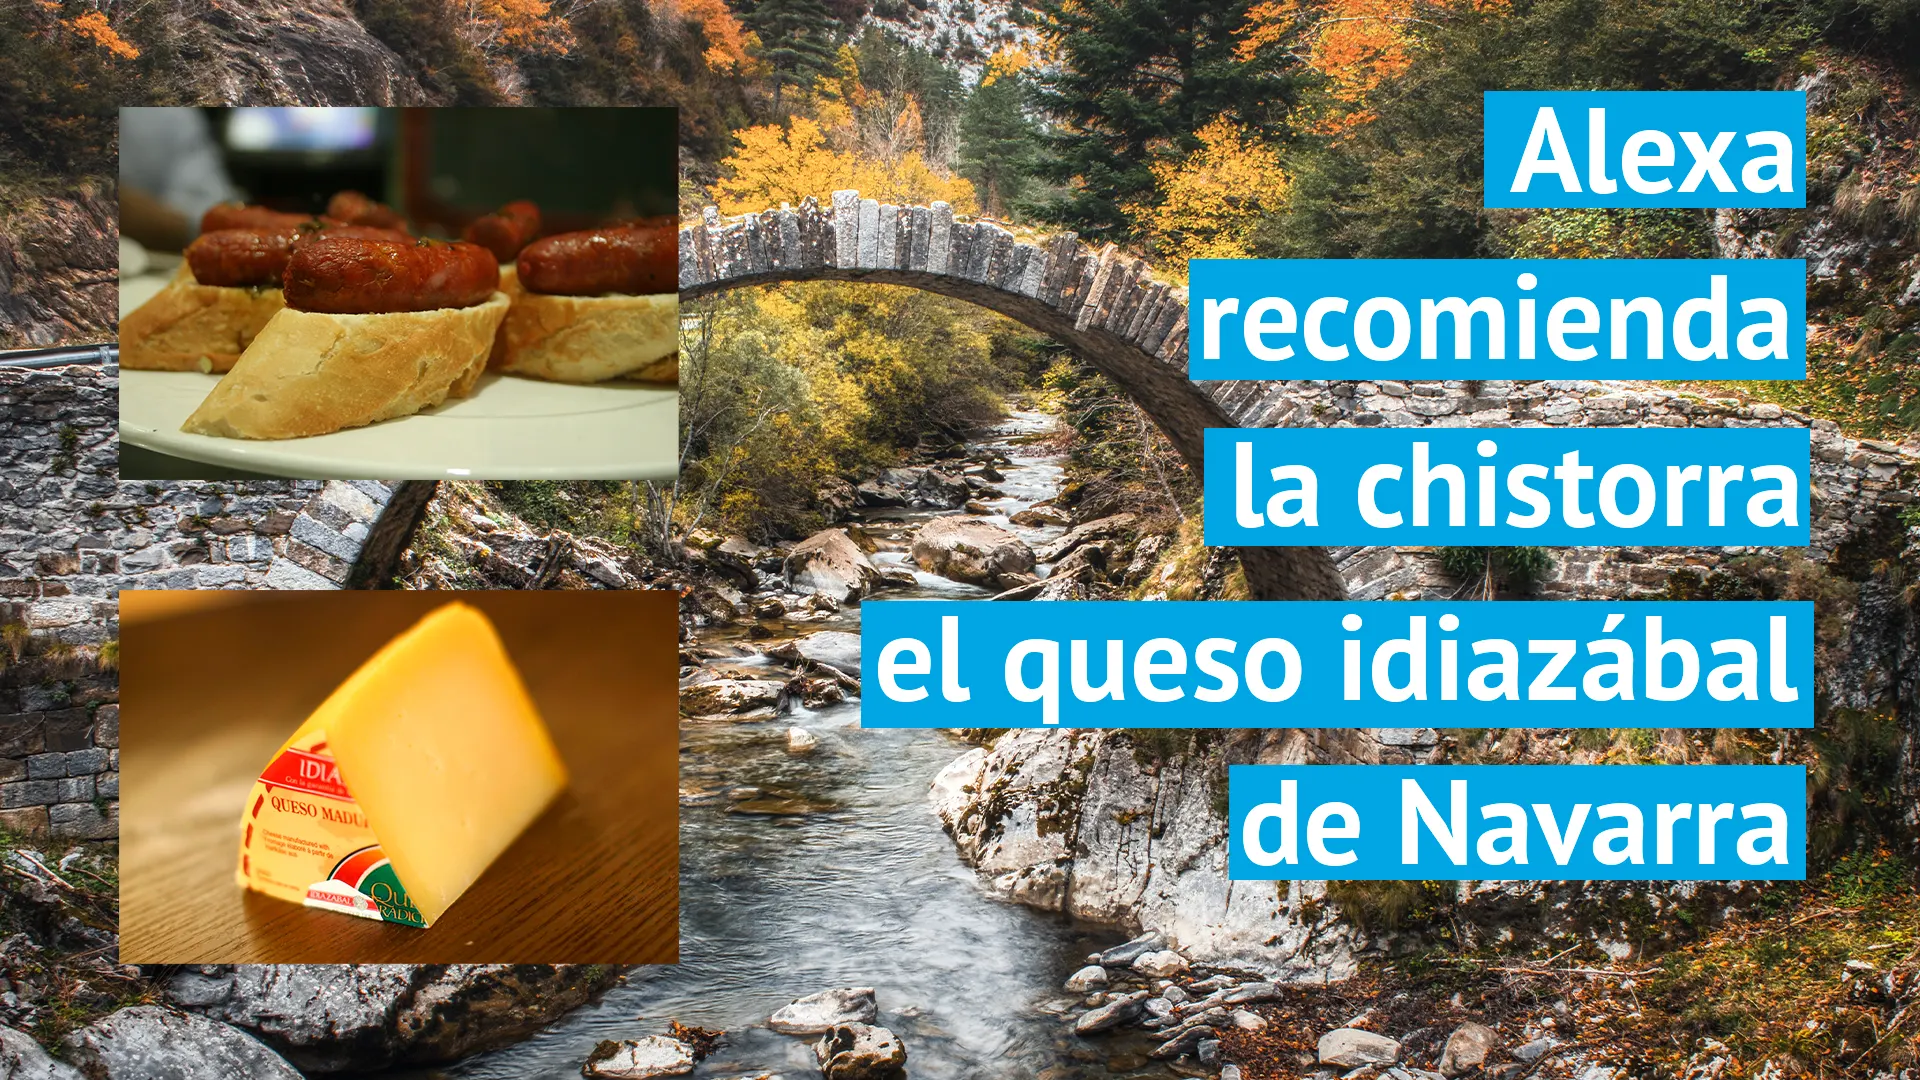 Alexa recomienda la chistorra y el queso Idiazábal de Navarra.